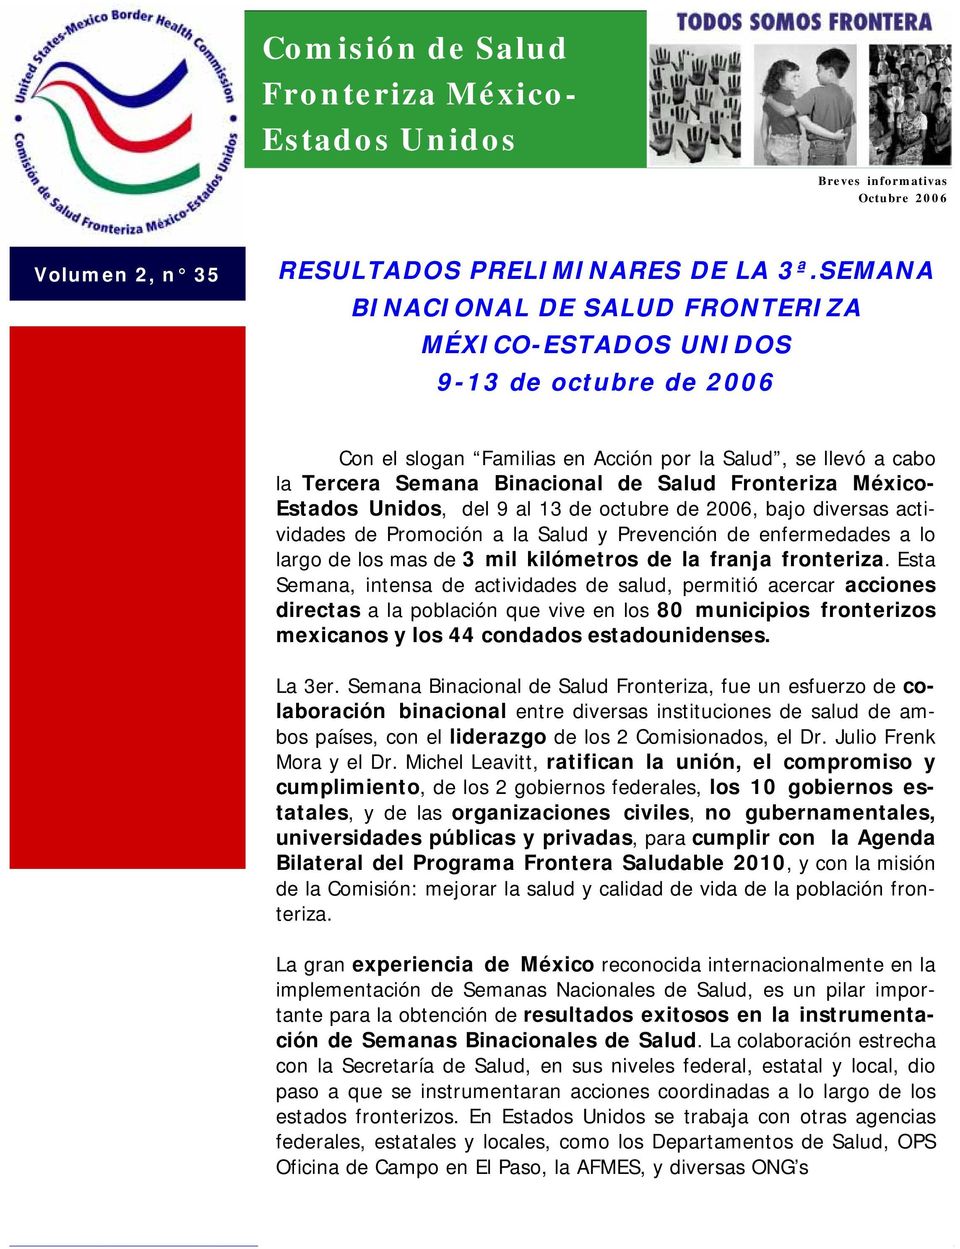 México- Estados Unidos, del 9 al 13 de octubre de 2006, bajo diversas actividades de Promoción a la Salud y Prevención de enfermedades a lo largo de los mas de 3 mil kilómetros de la franja